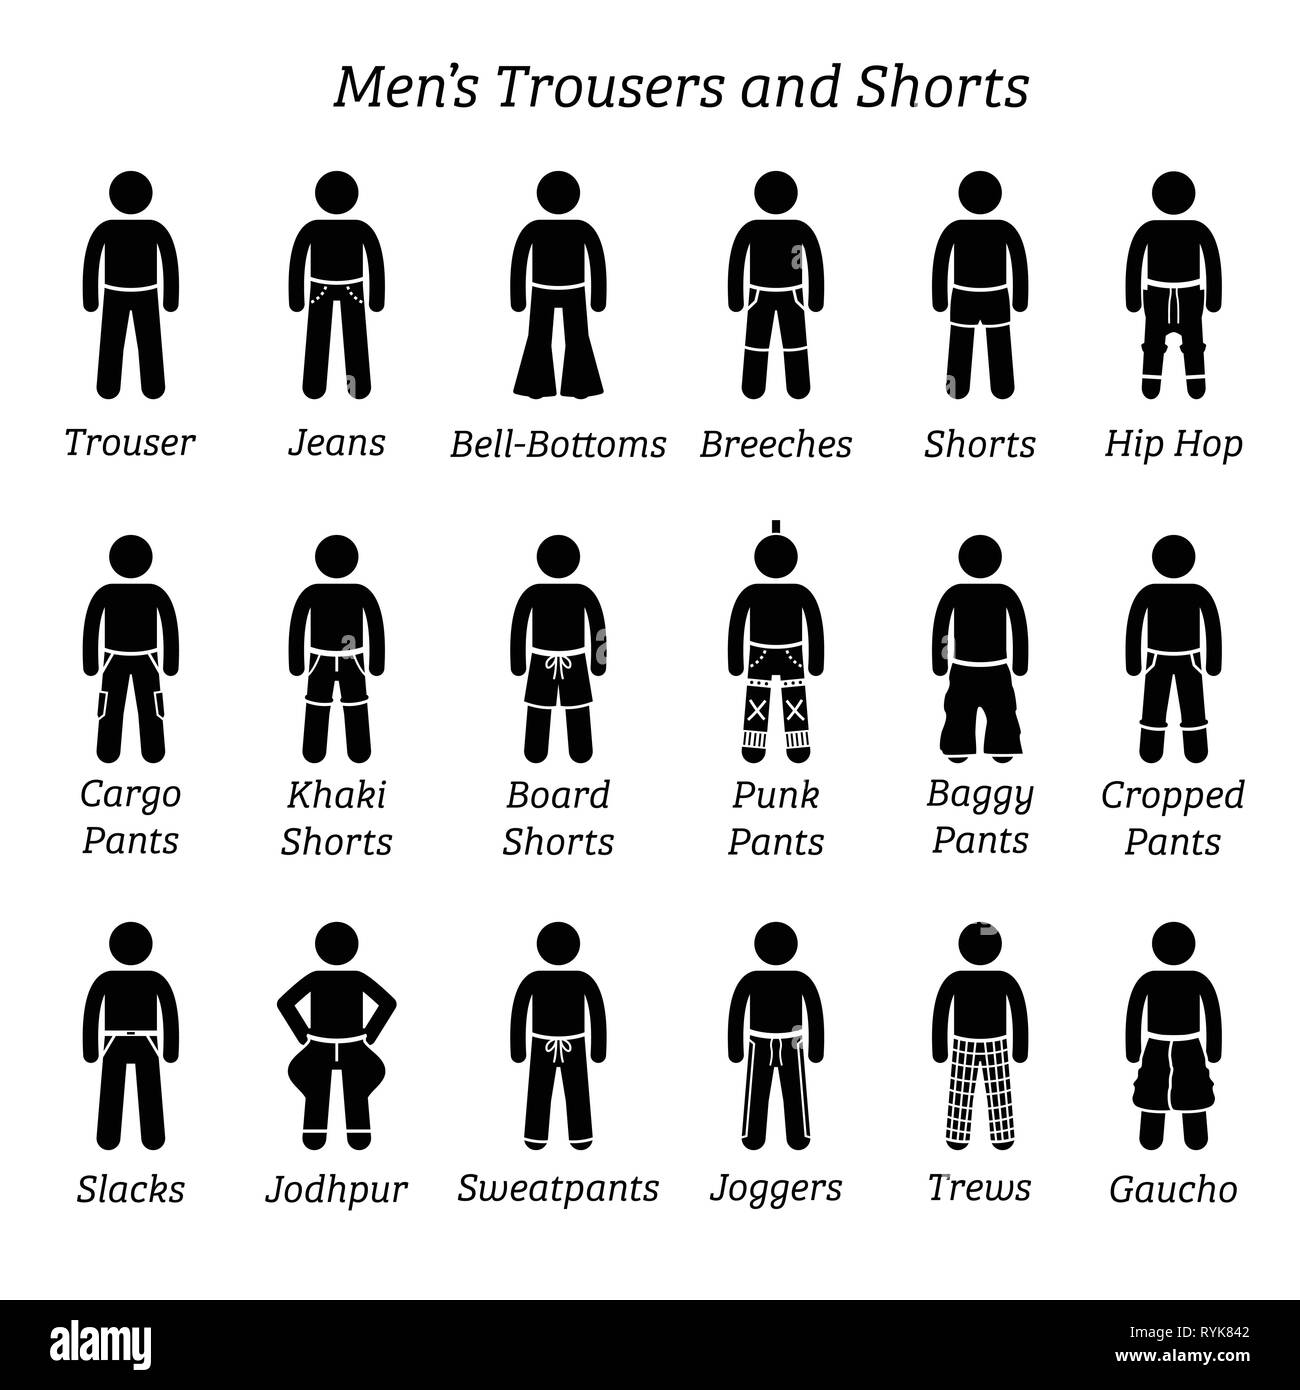 Männer Hosen, Hose und Shorts. Strichmännchen zeigen eine Reihe von  verschiedenen Arten von Hosen, Hosen und Shorts. Diese mode kleidung Design  sind Verschleiß durch Stock-Vektorgrafik - Alamy